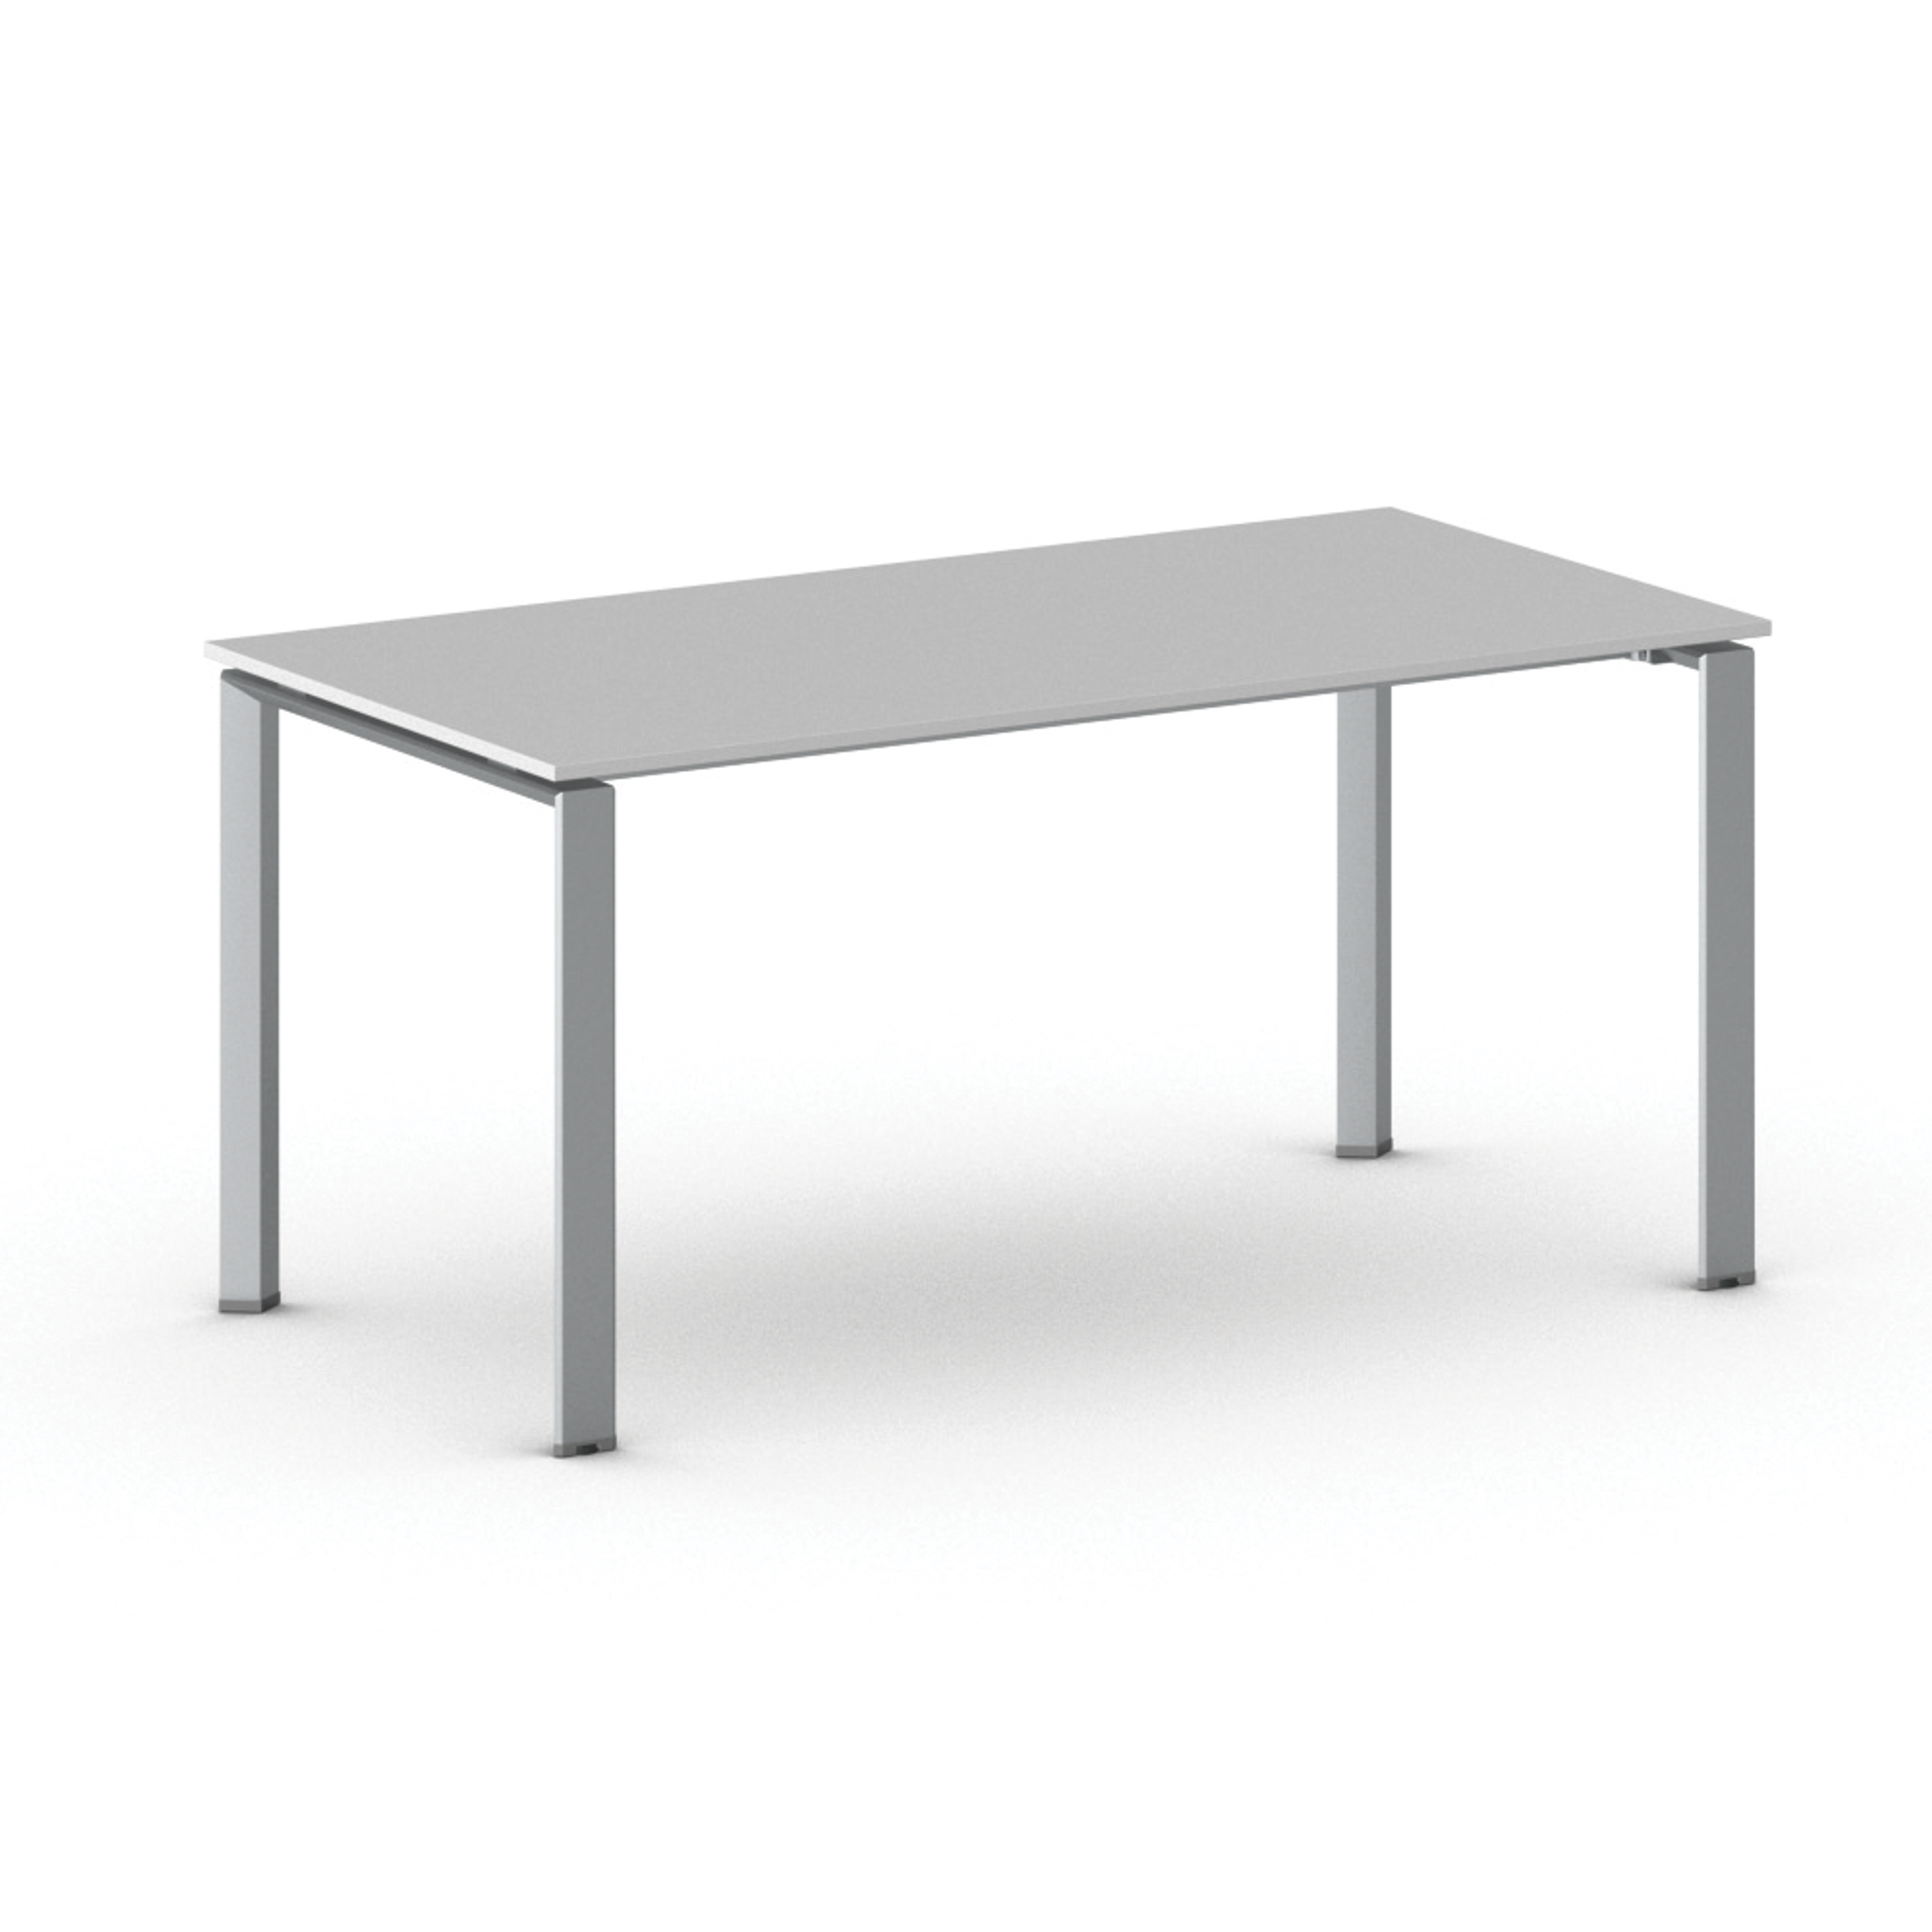 Konferenztisch, Besprechungstisch INFINITY 160x80 cm, grau, graues Fußgestell